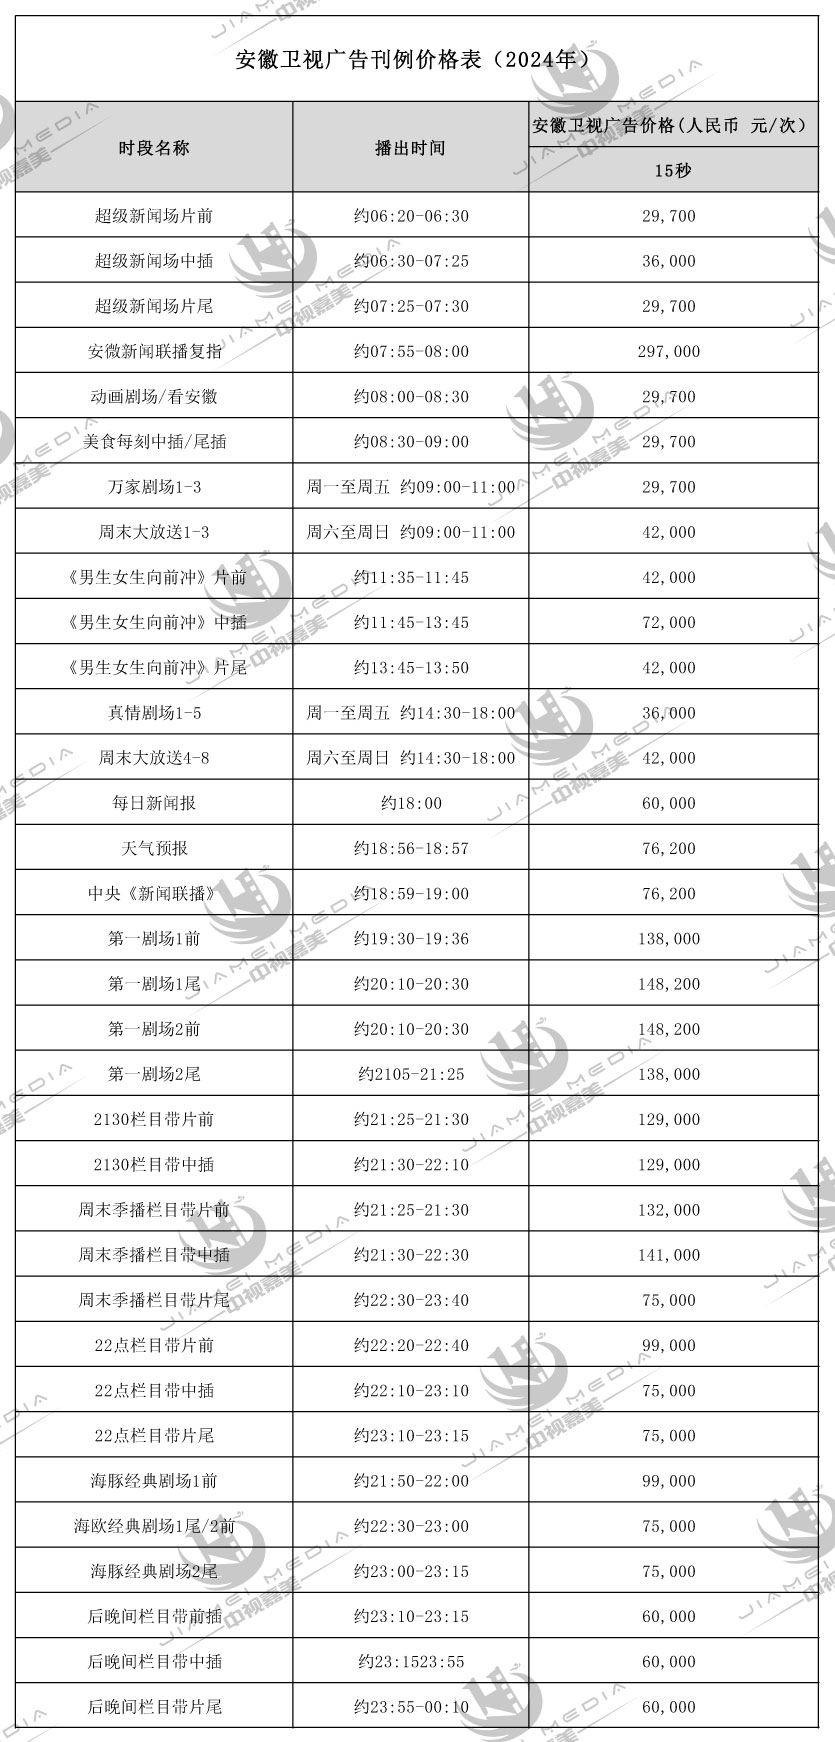 安徽卫视广告刊例价格表(2024年)